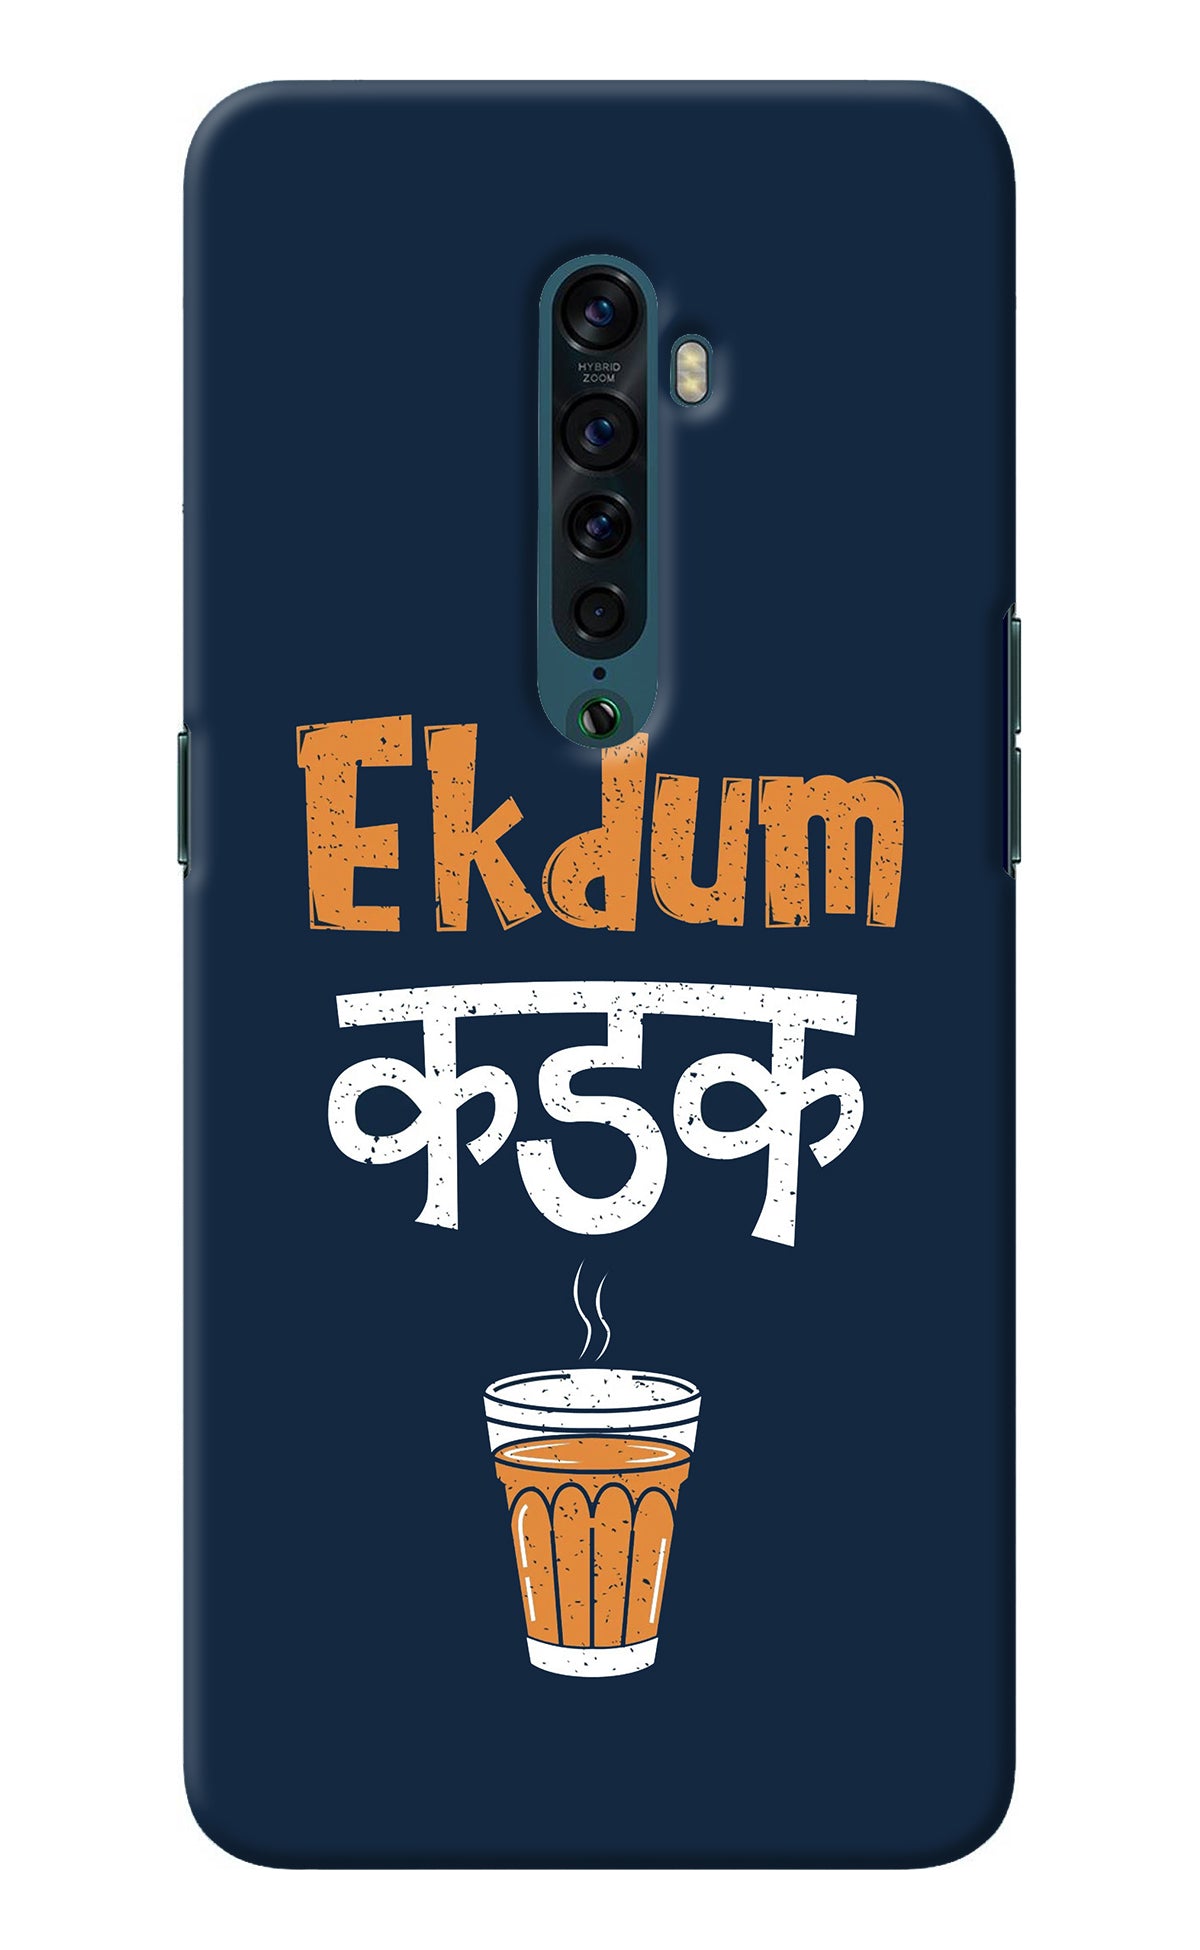 Ekdum Kadak Chai Oppo Reno2 Back Cover